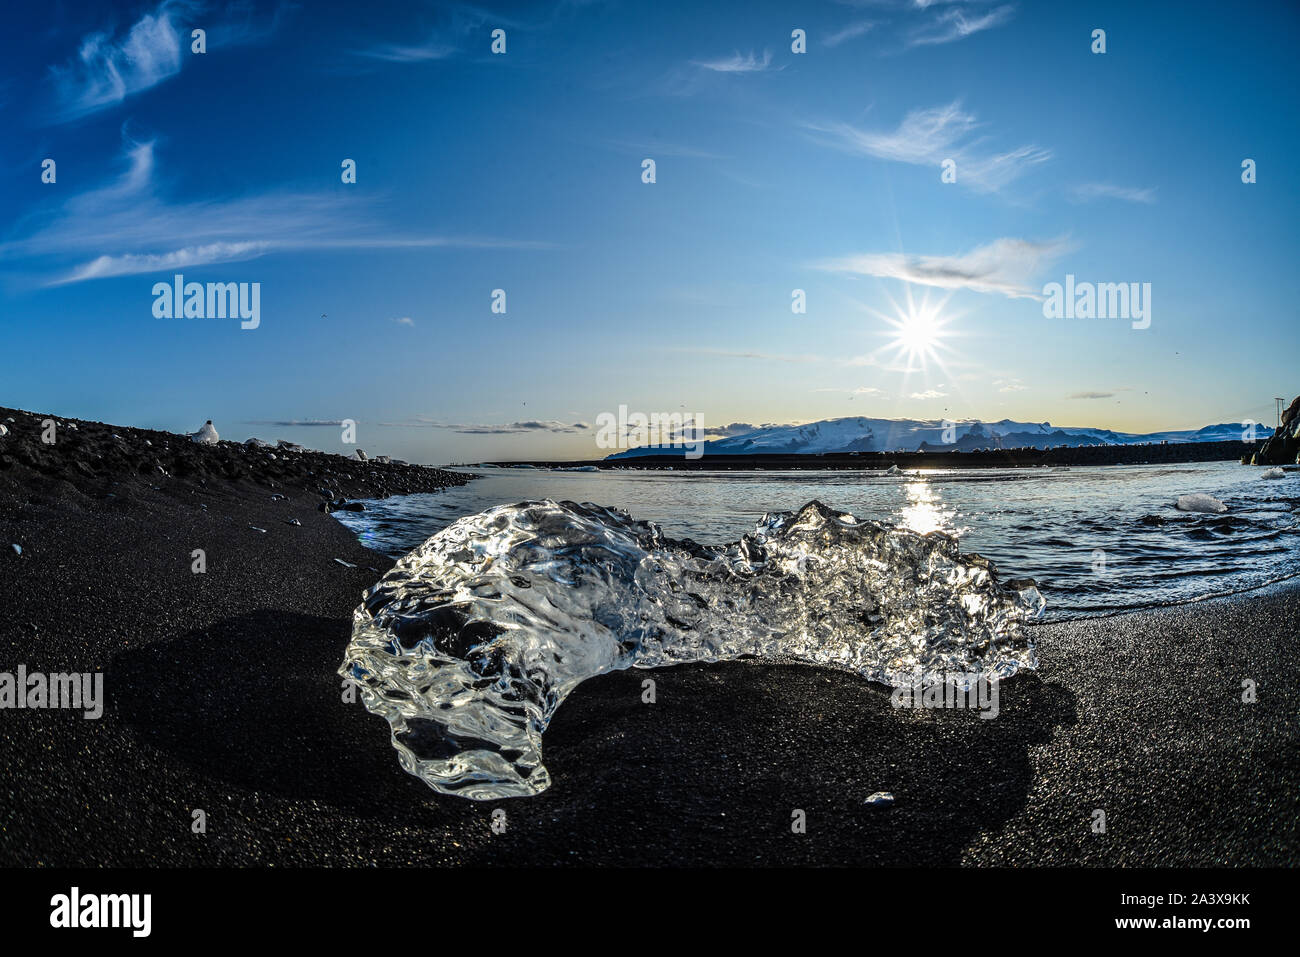 Melting Ice on diamond beach in Jokulsarlon, Iceland Stock Photo